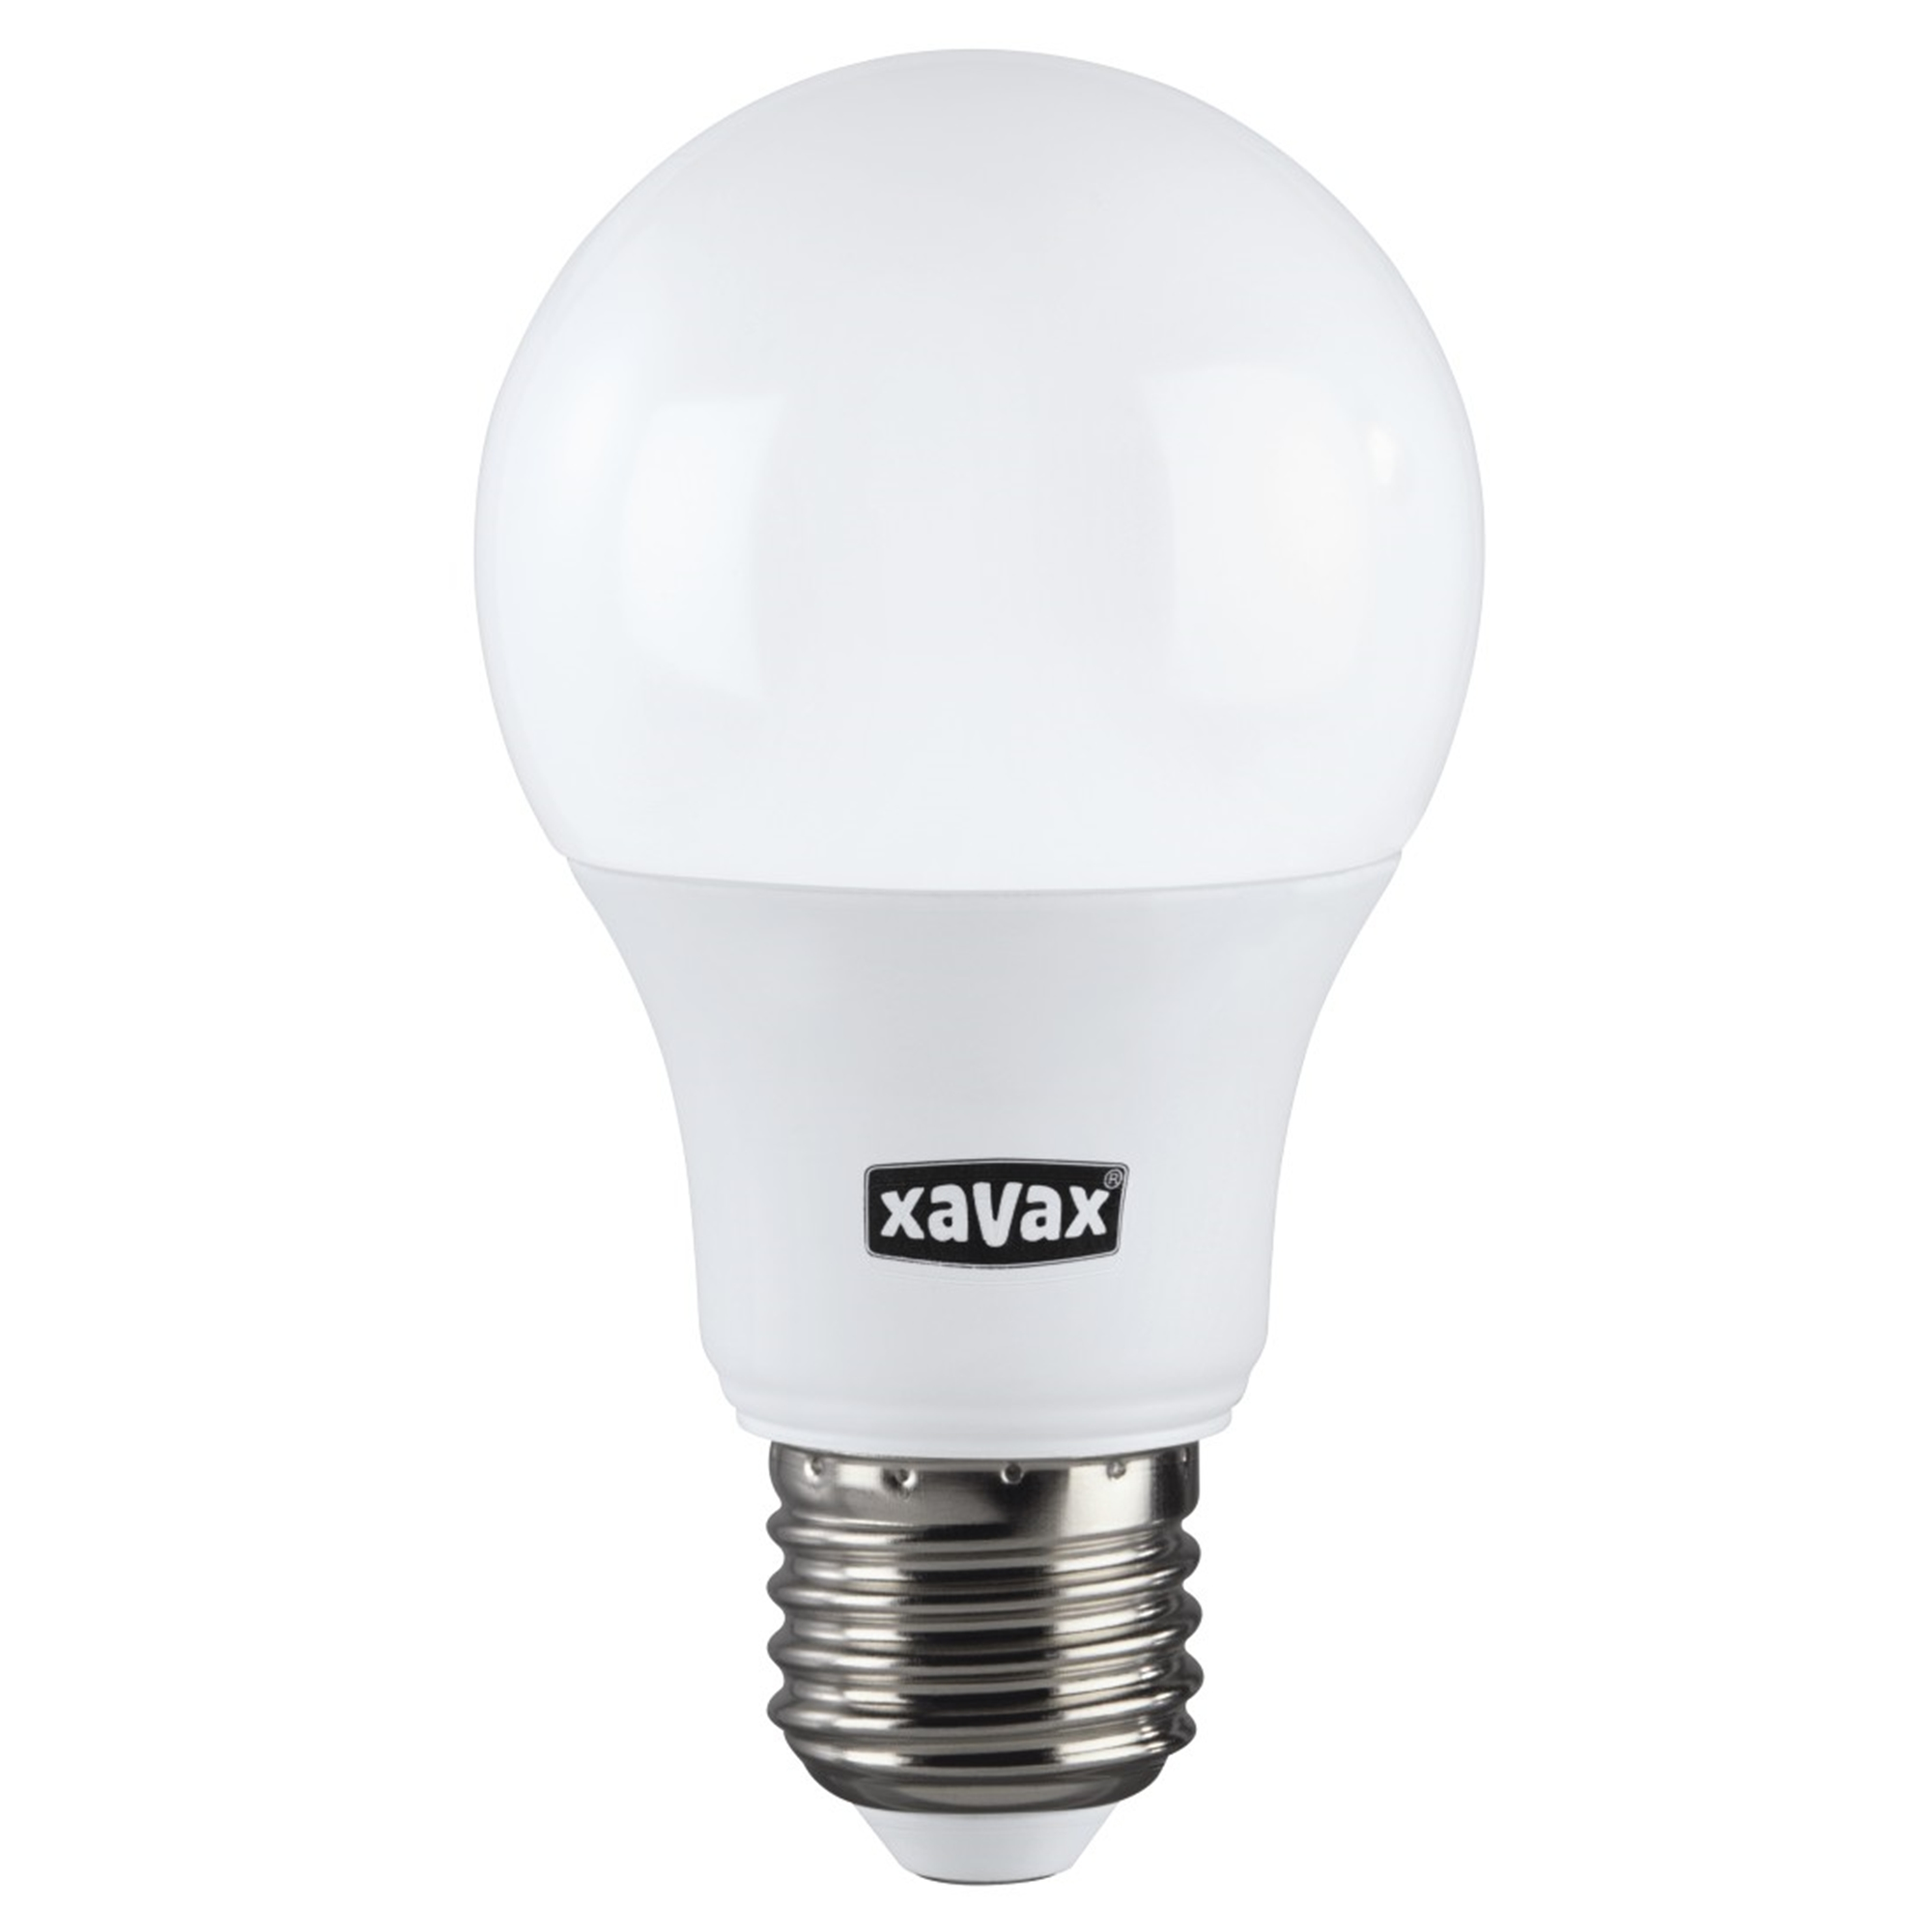 XAVAX E27, Warmweiß ersetzt LED-Lampe 806lm E27 60W